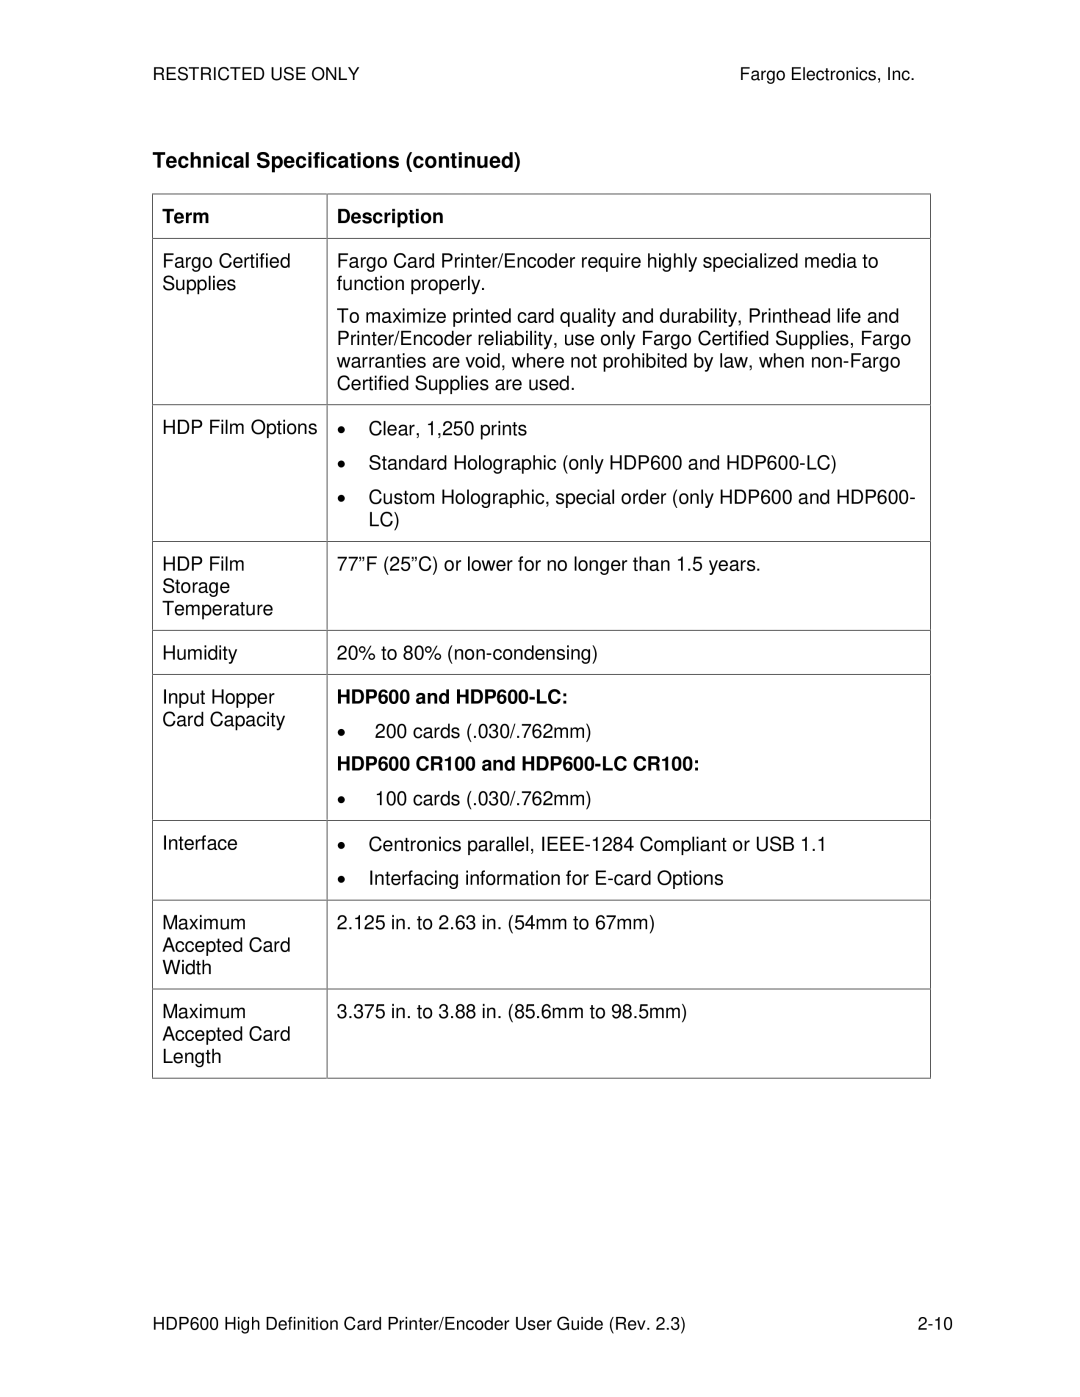 FARGO electronic HDP600-LC, HDP600 CR100 manual Term Description, ∙ 200 cards .030/.762mm 